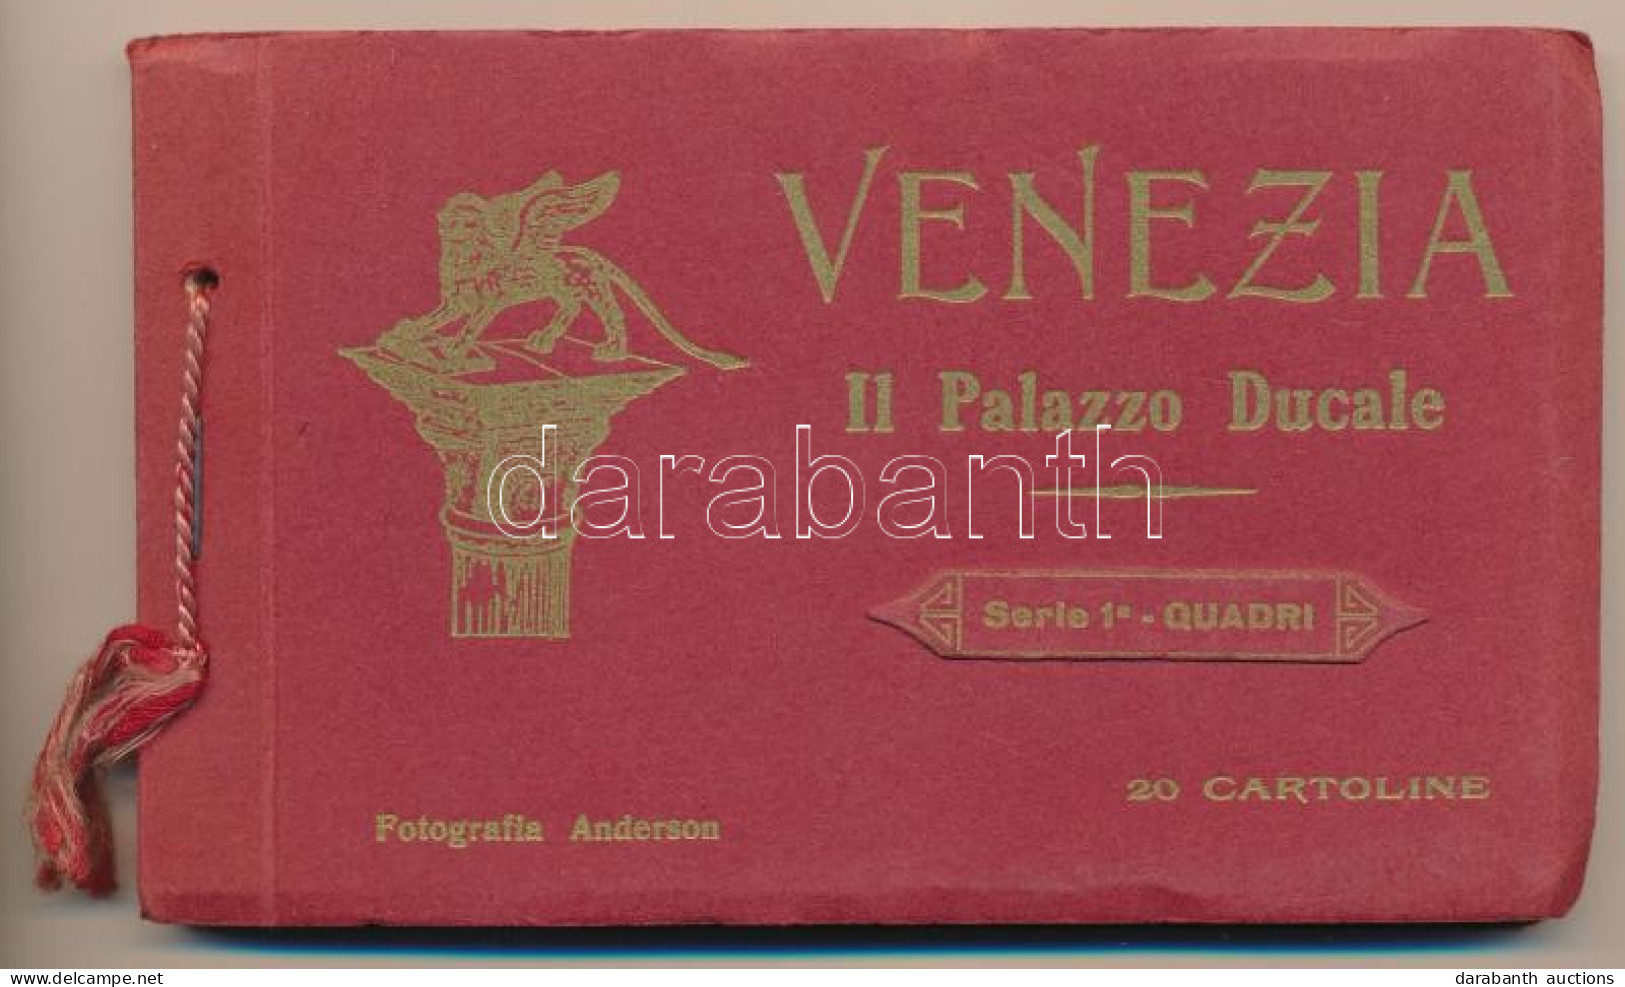 ** T2/T3 Venezia, Venice; Il Palazzo Ducale. Serie 1a - Quadri. Fotografia Anderson. 20 Cartoline / Italian Postcard Boo - Unclassified